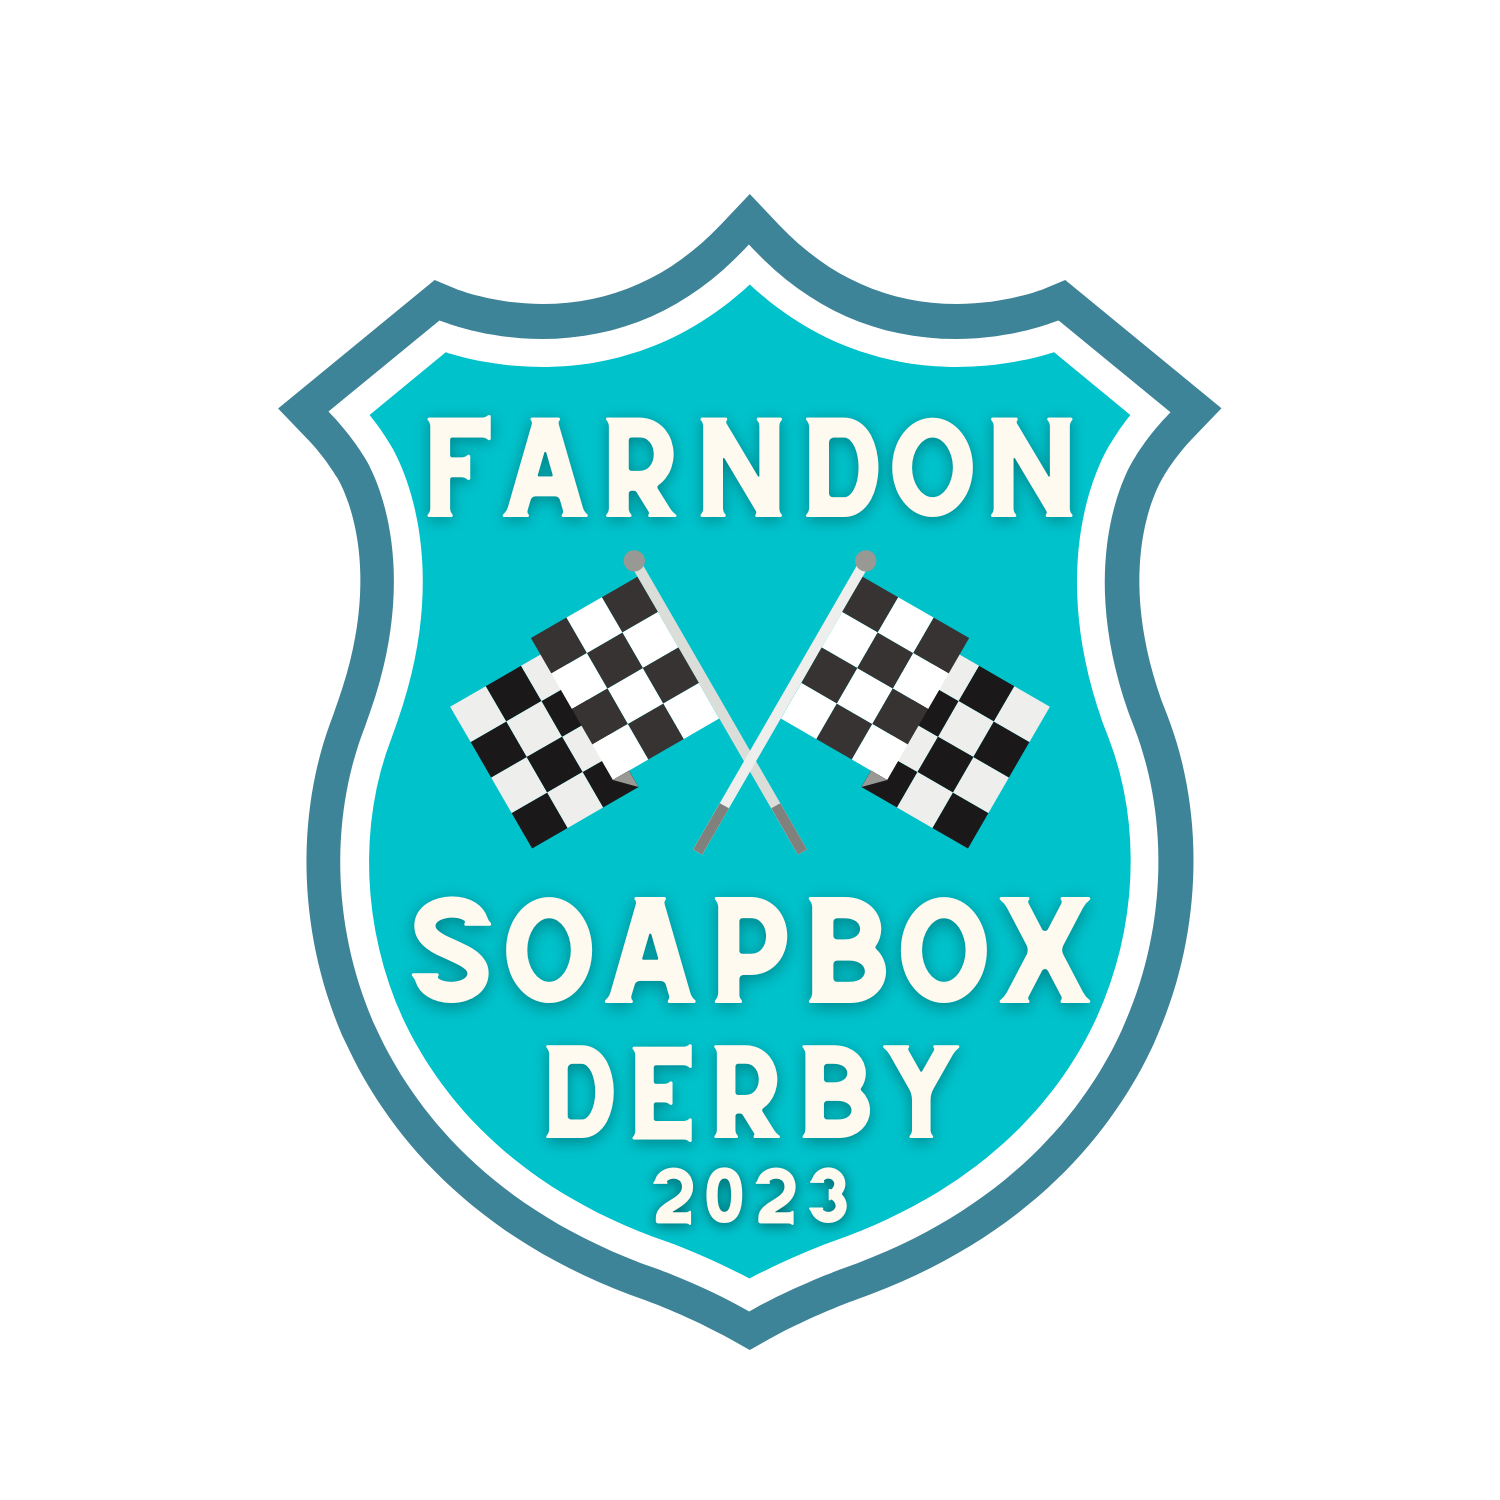 Farndon Soapbox Derby